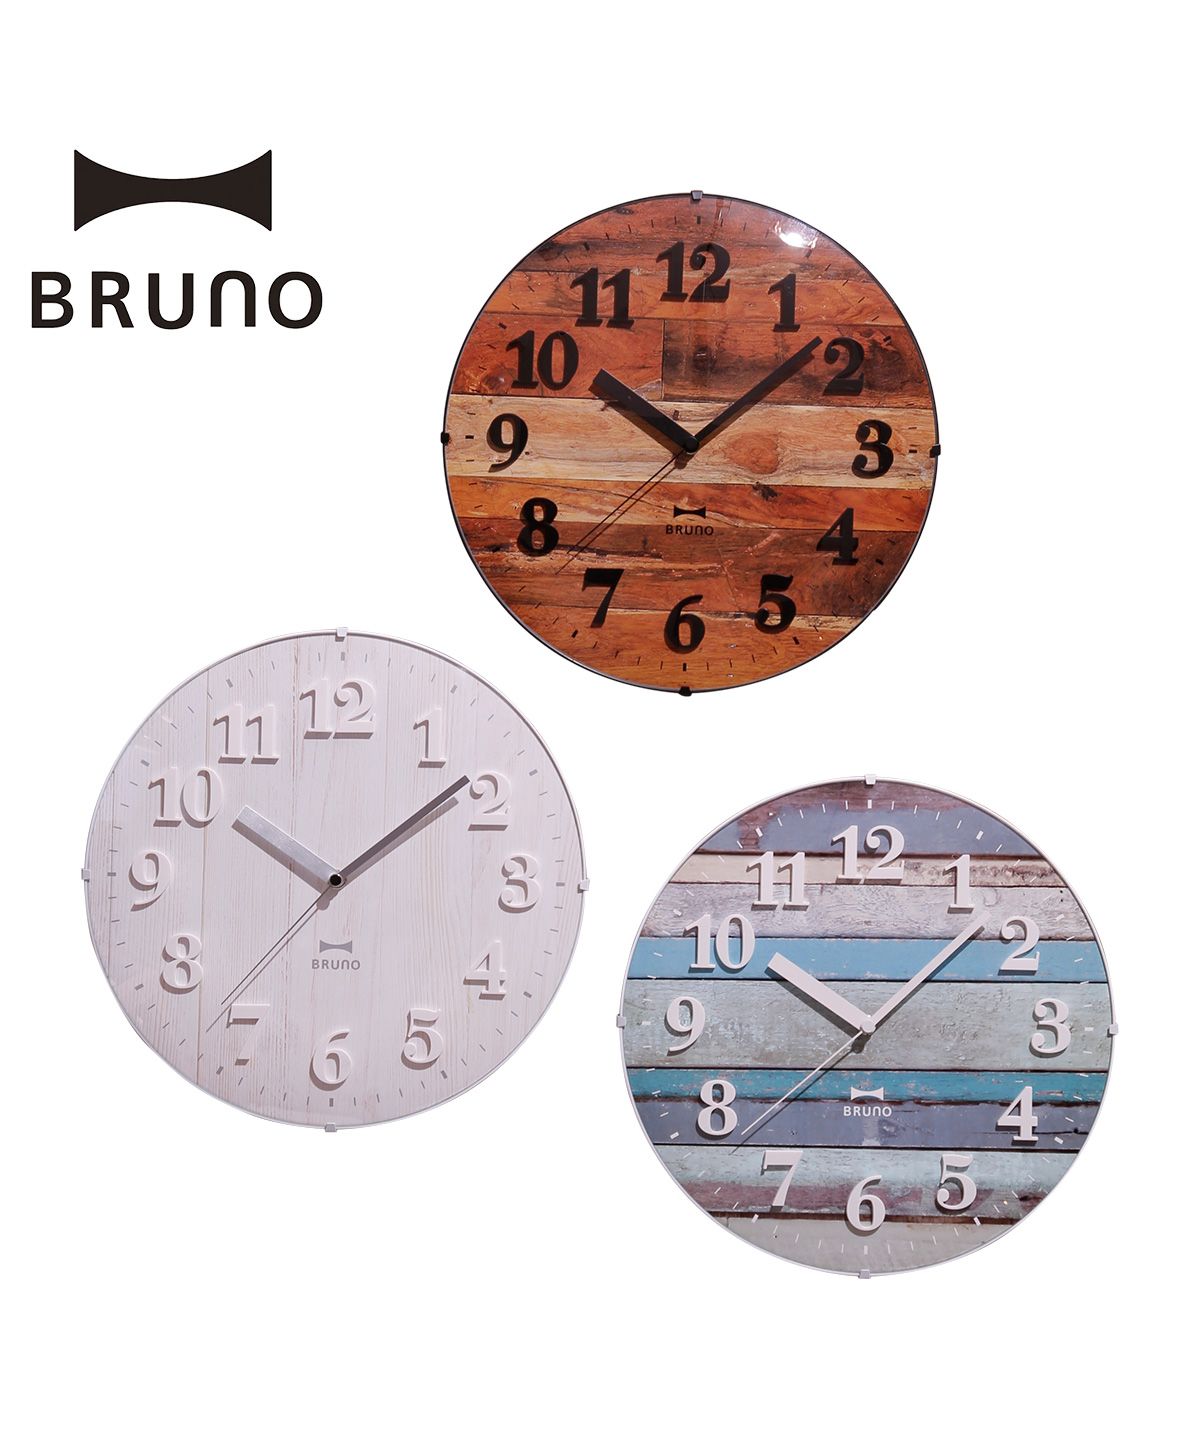 ブルーノ(BRUNO) |BRUNO ブルーノ 電波時計 掛け時計 ビンテージウッド 